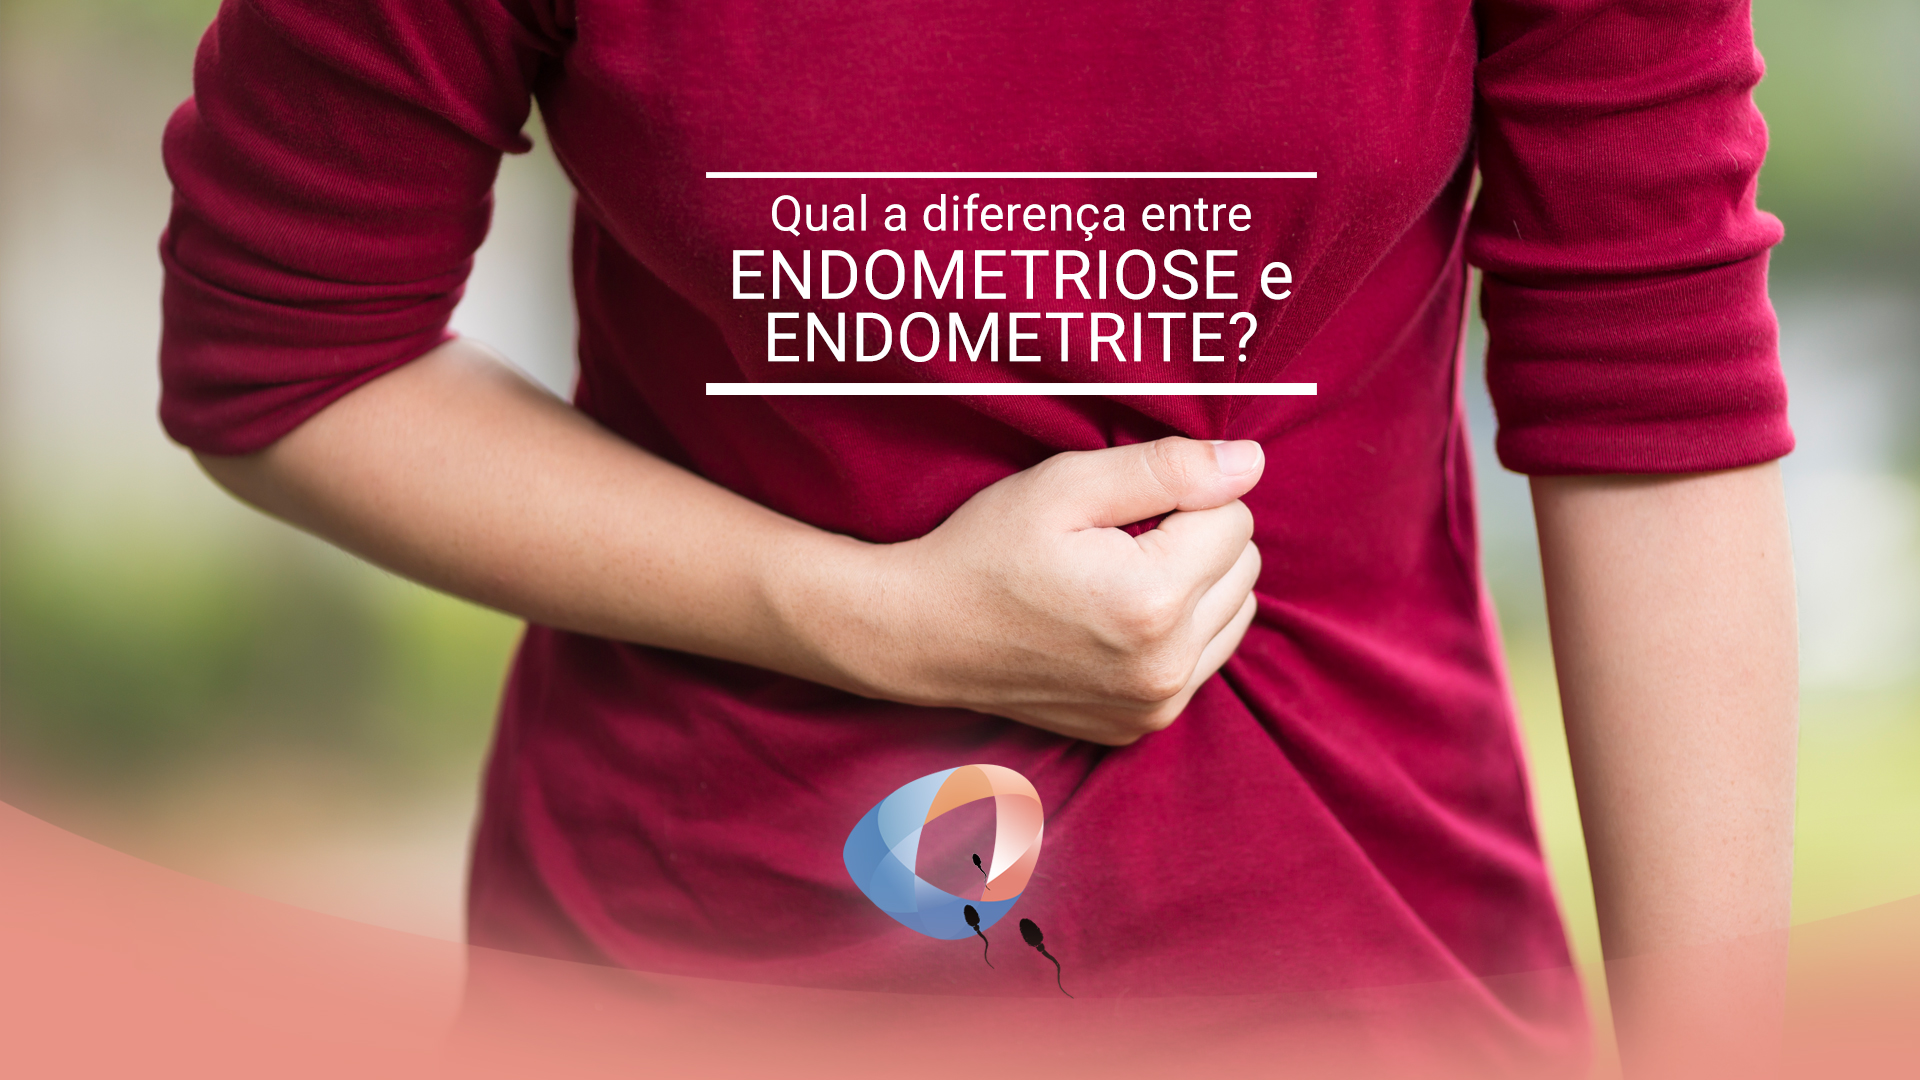 Qual a diferença entre endometriose e endometrite?